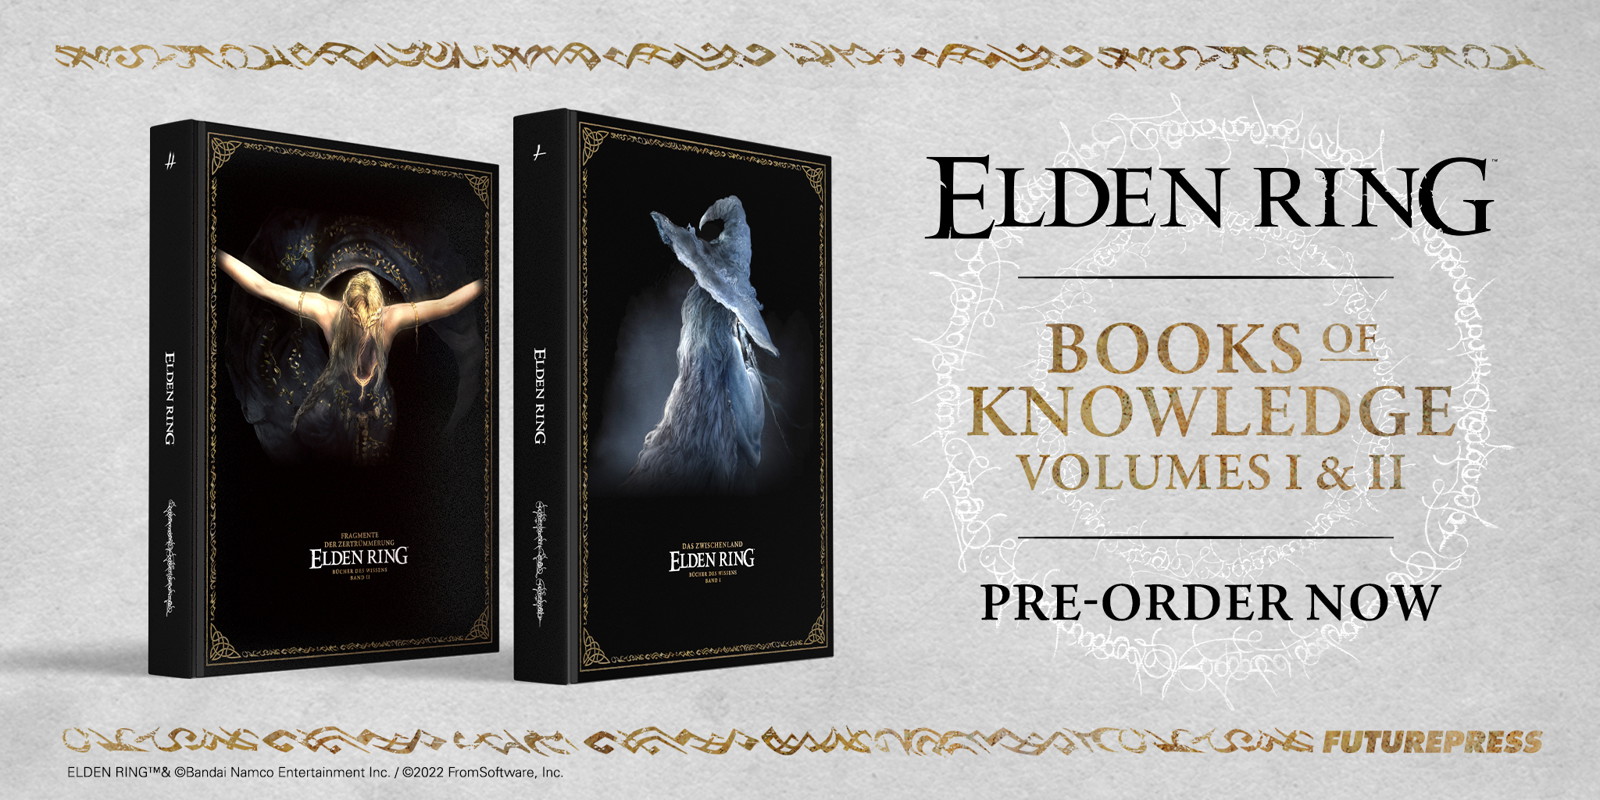 Elden Ring Book of Knowledge Volume II